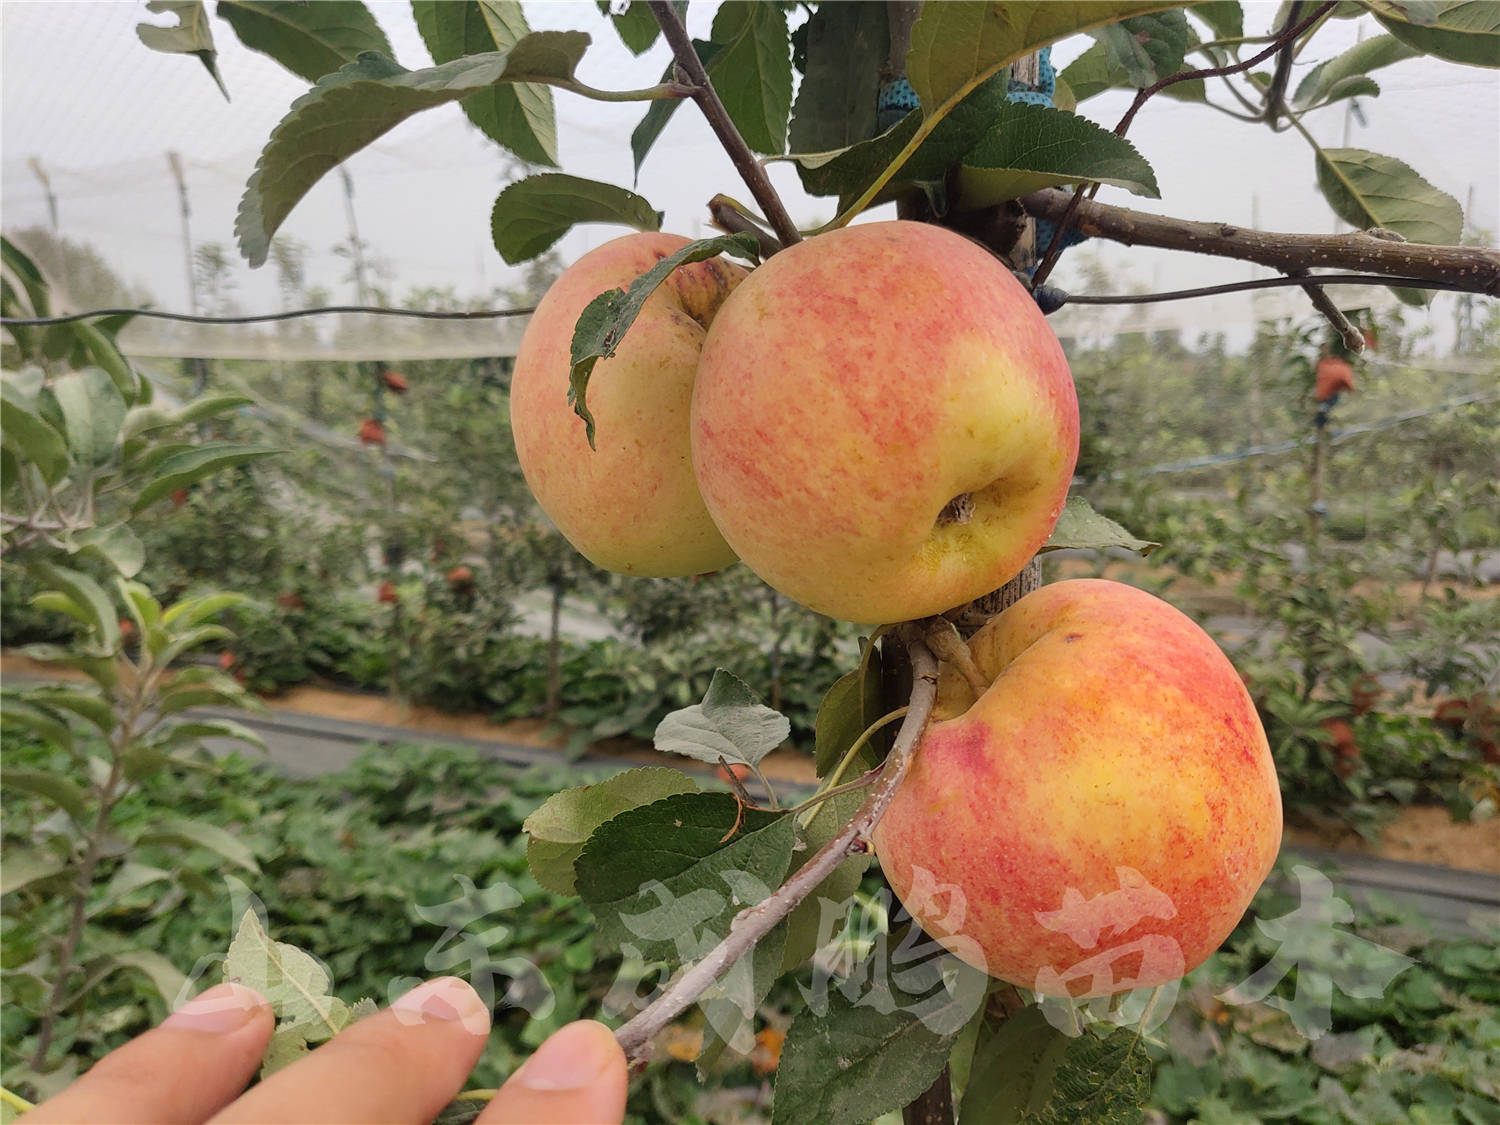 新西兰苹果业今年在华“绽放光彩”：“爱妃”、“爵士”市场销量已大增 - 中国水果门户